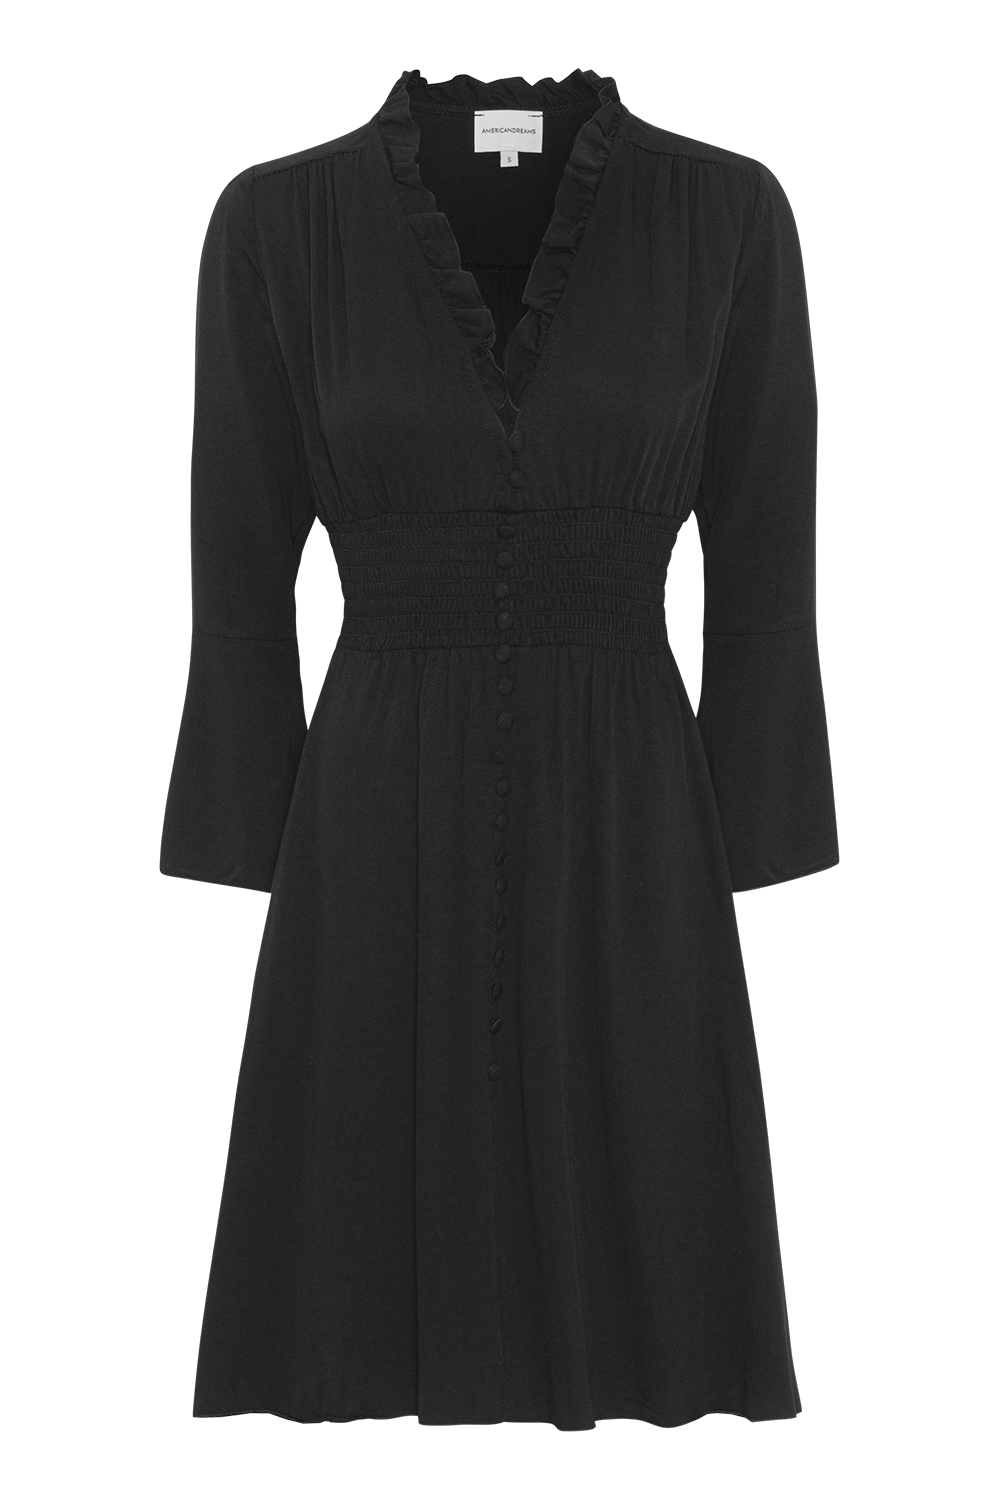 Sally Short Dress Black Solid